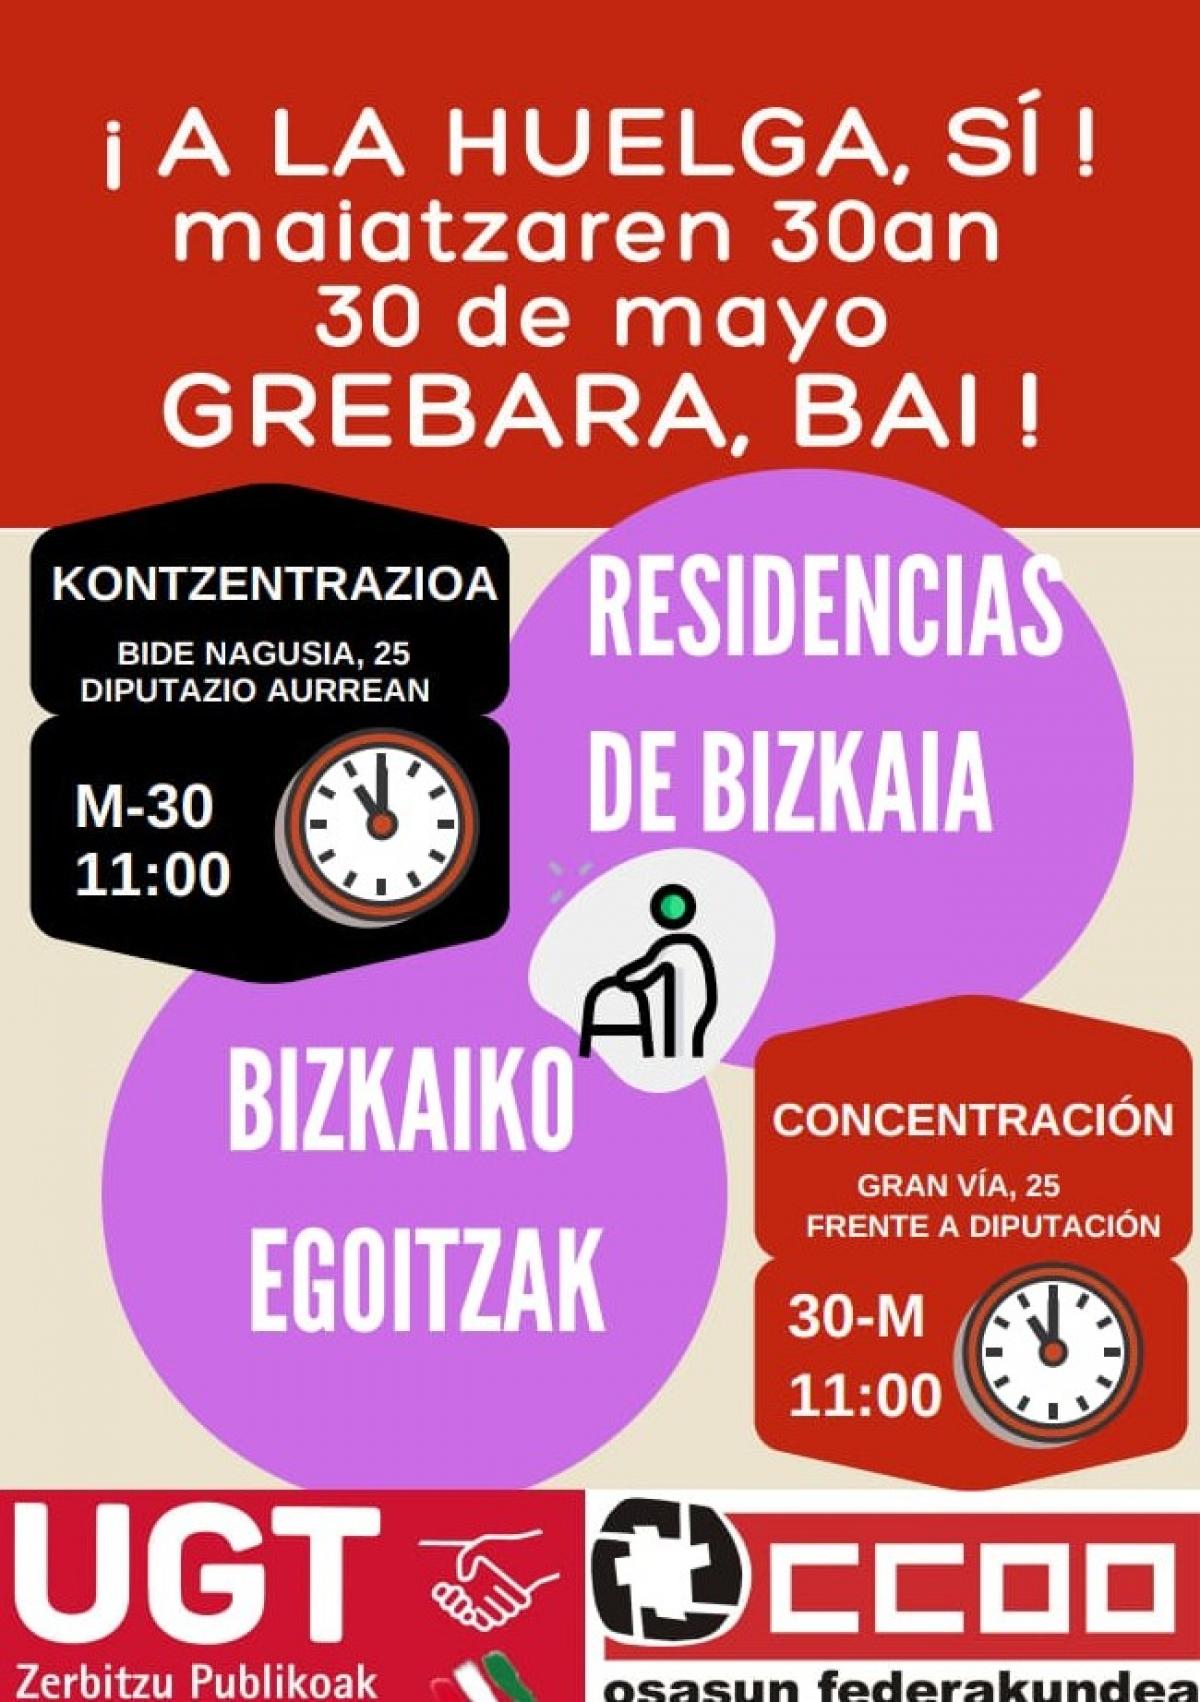 Cartel llamando a la huelga de las residencias de Bizkaia.